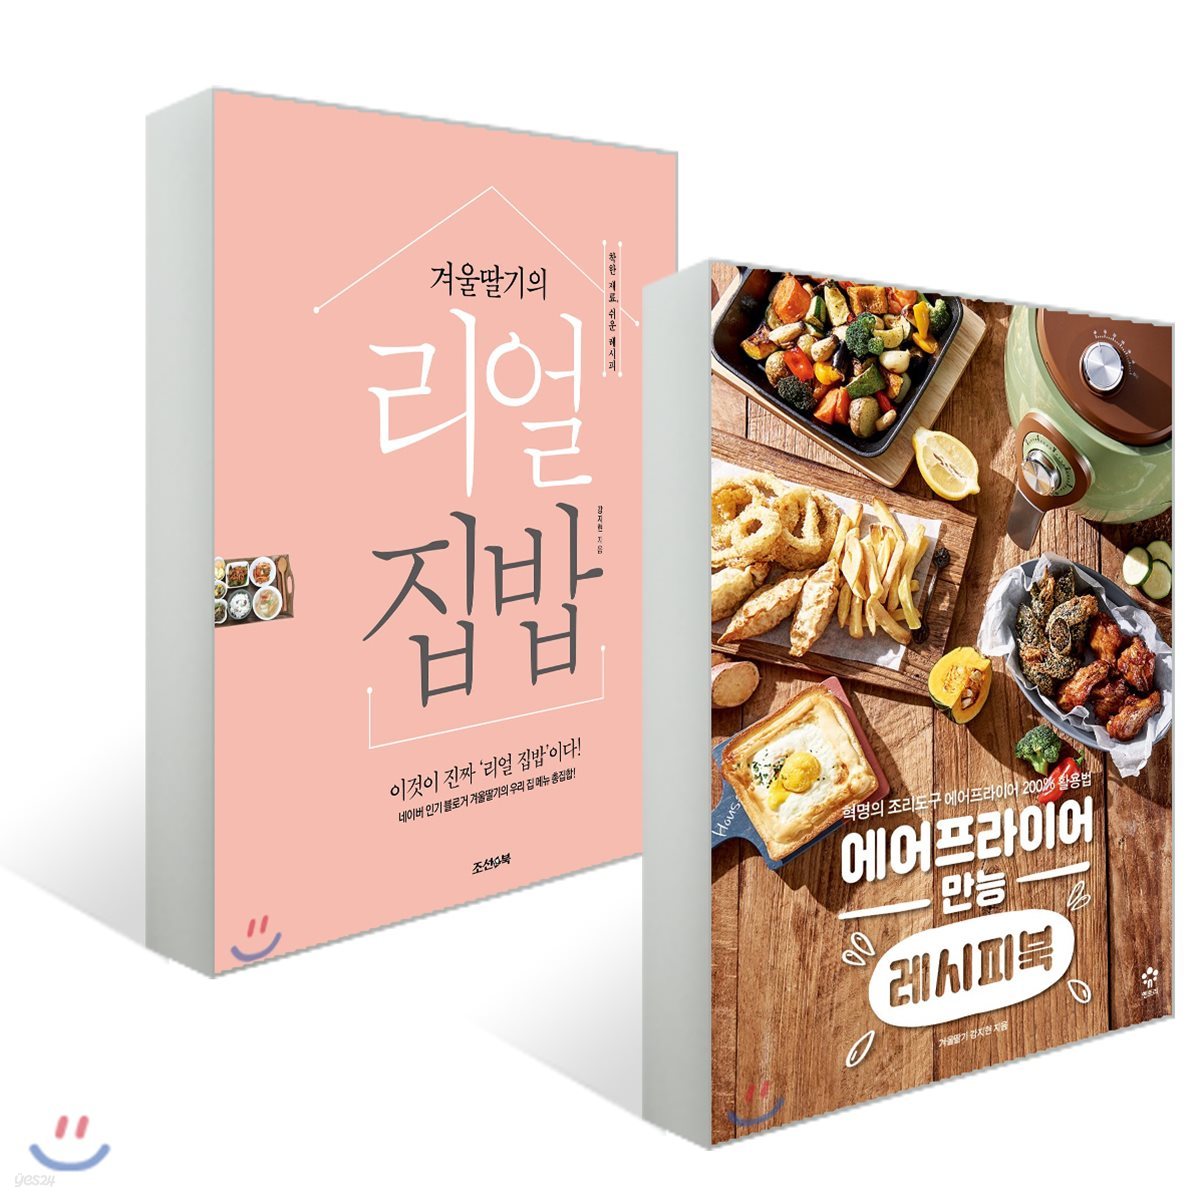 에어프라이어 만능 레시피북 + 겨울딸기의 리얼 집밥